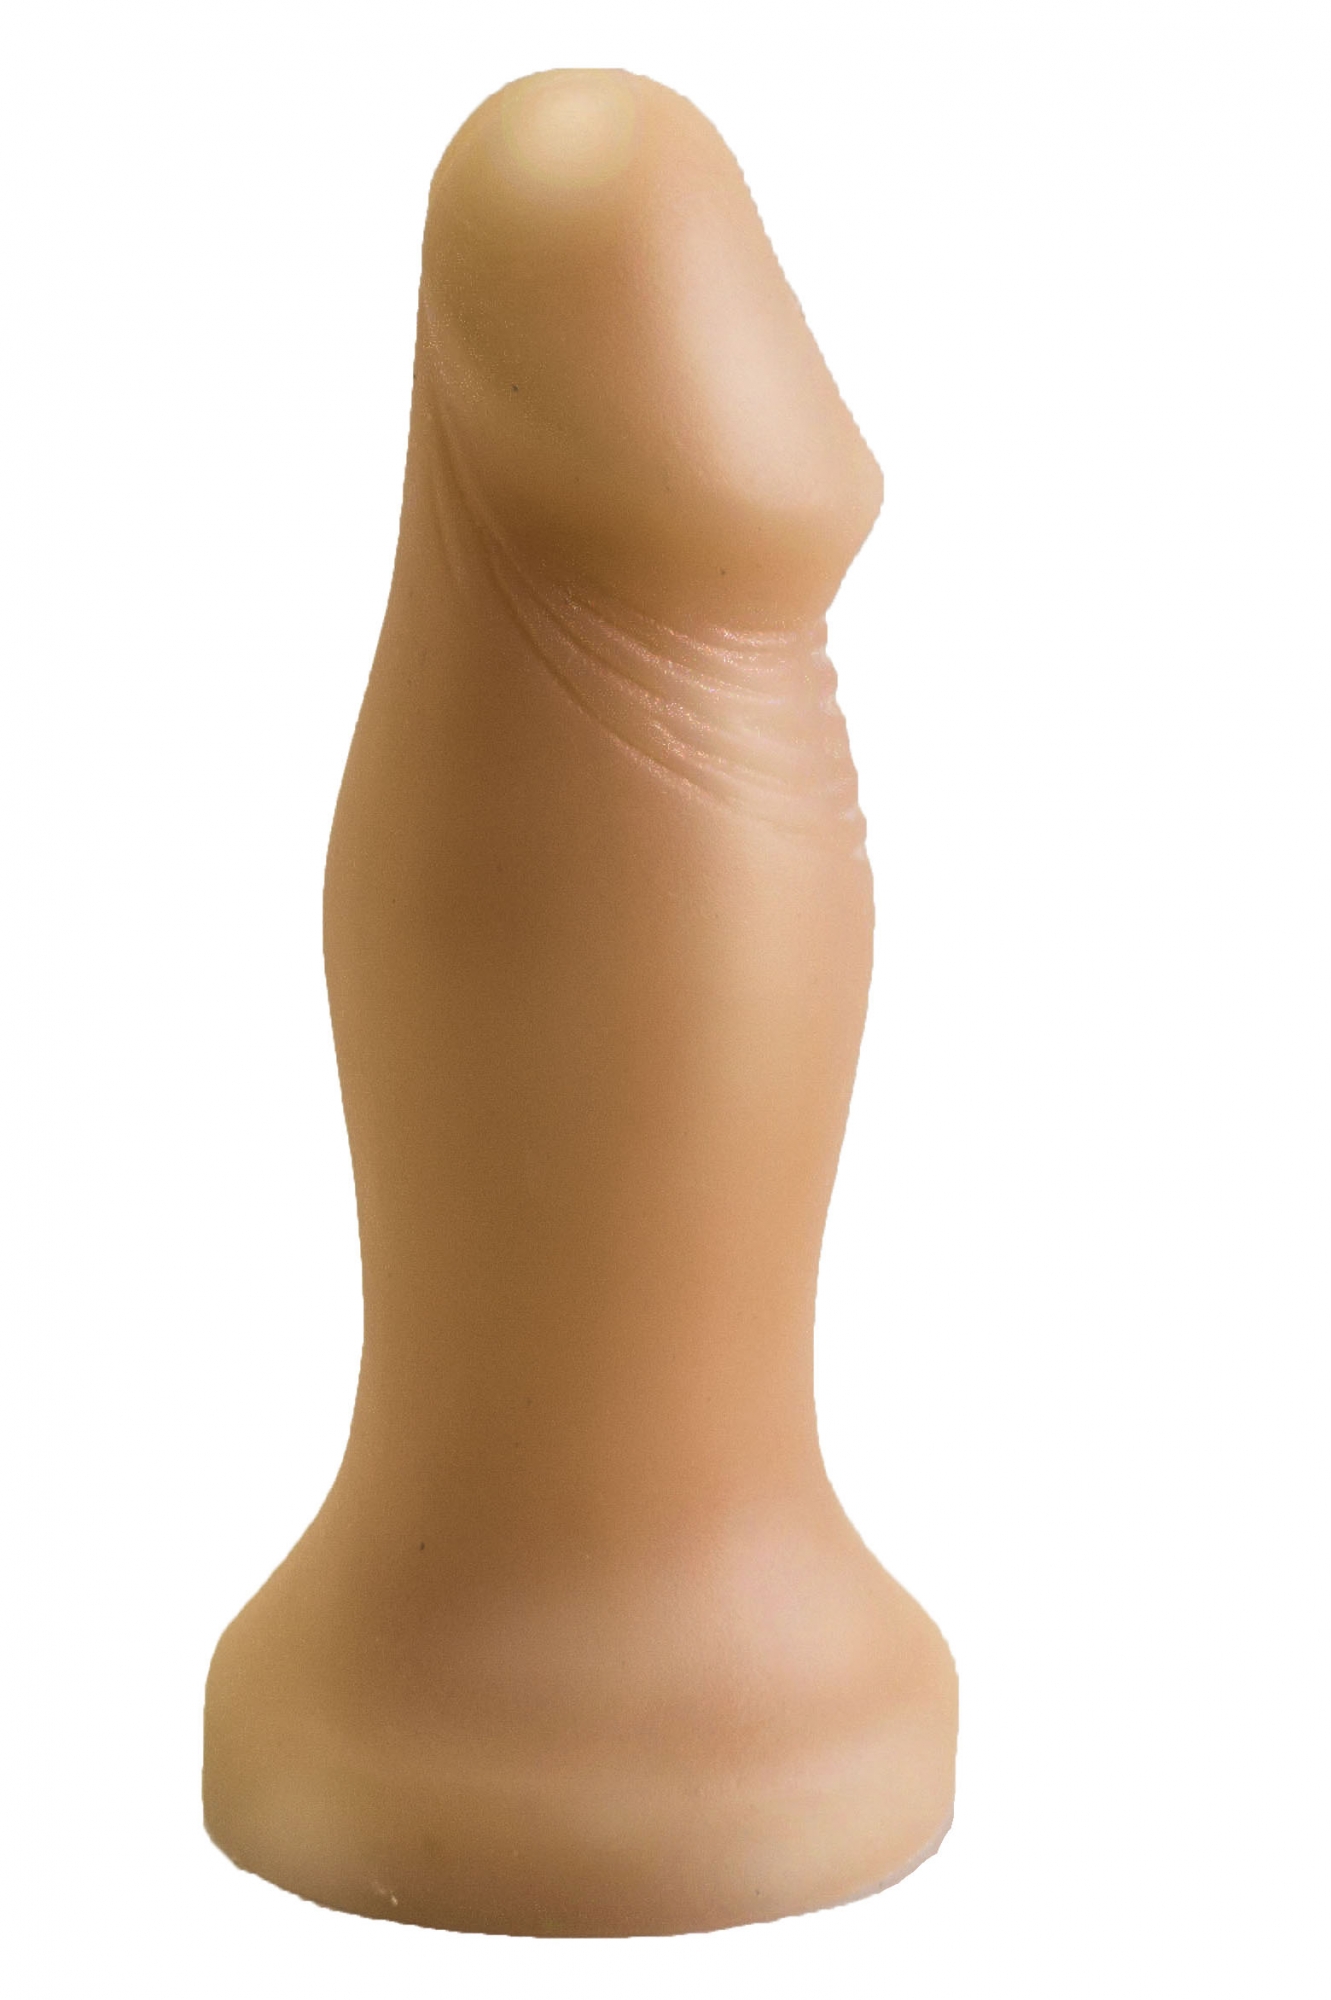 Втулка-пенис анальная, на подставке, ПВХ, цвет телесный, 14х4 см 